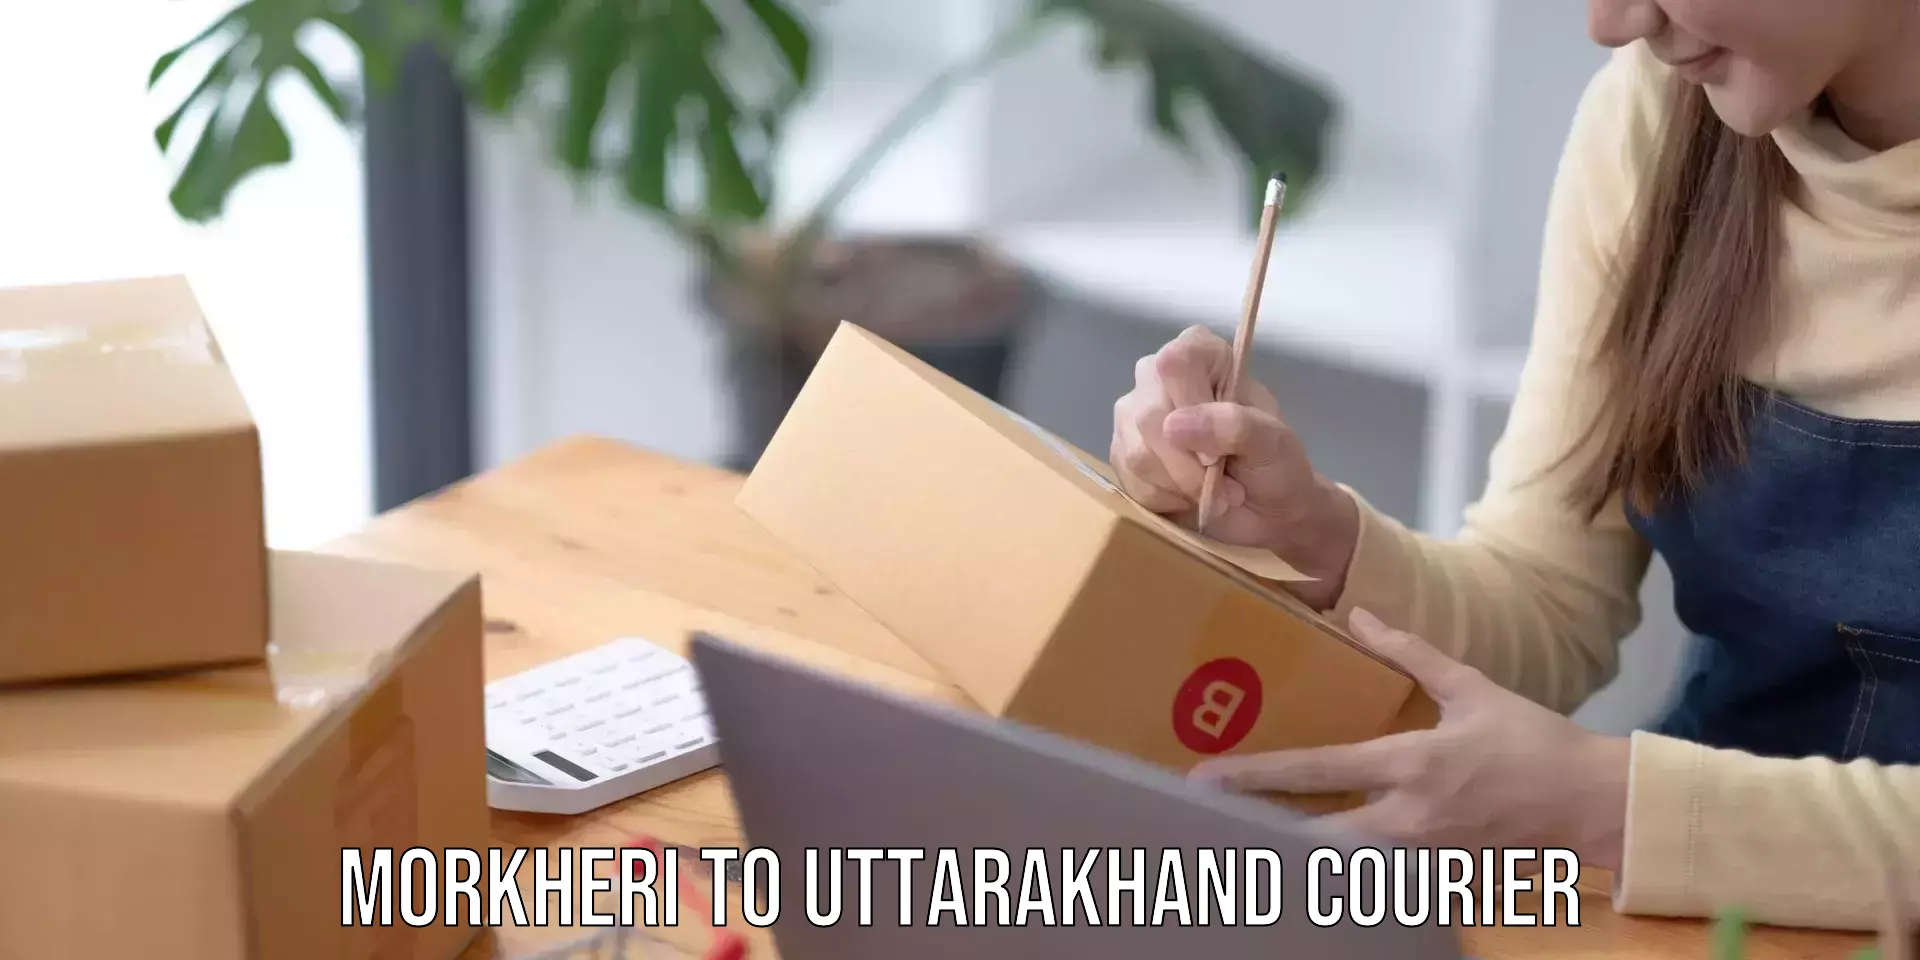 On-call courier service Morkheri to Uttarakhand